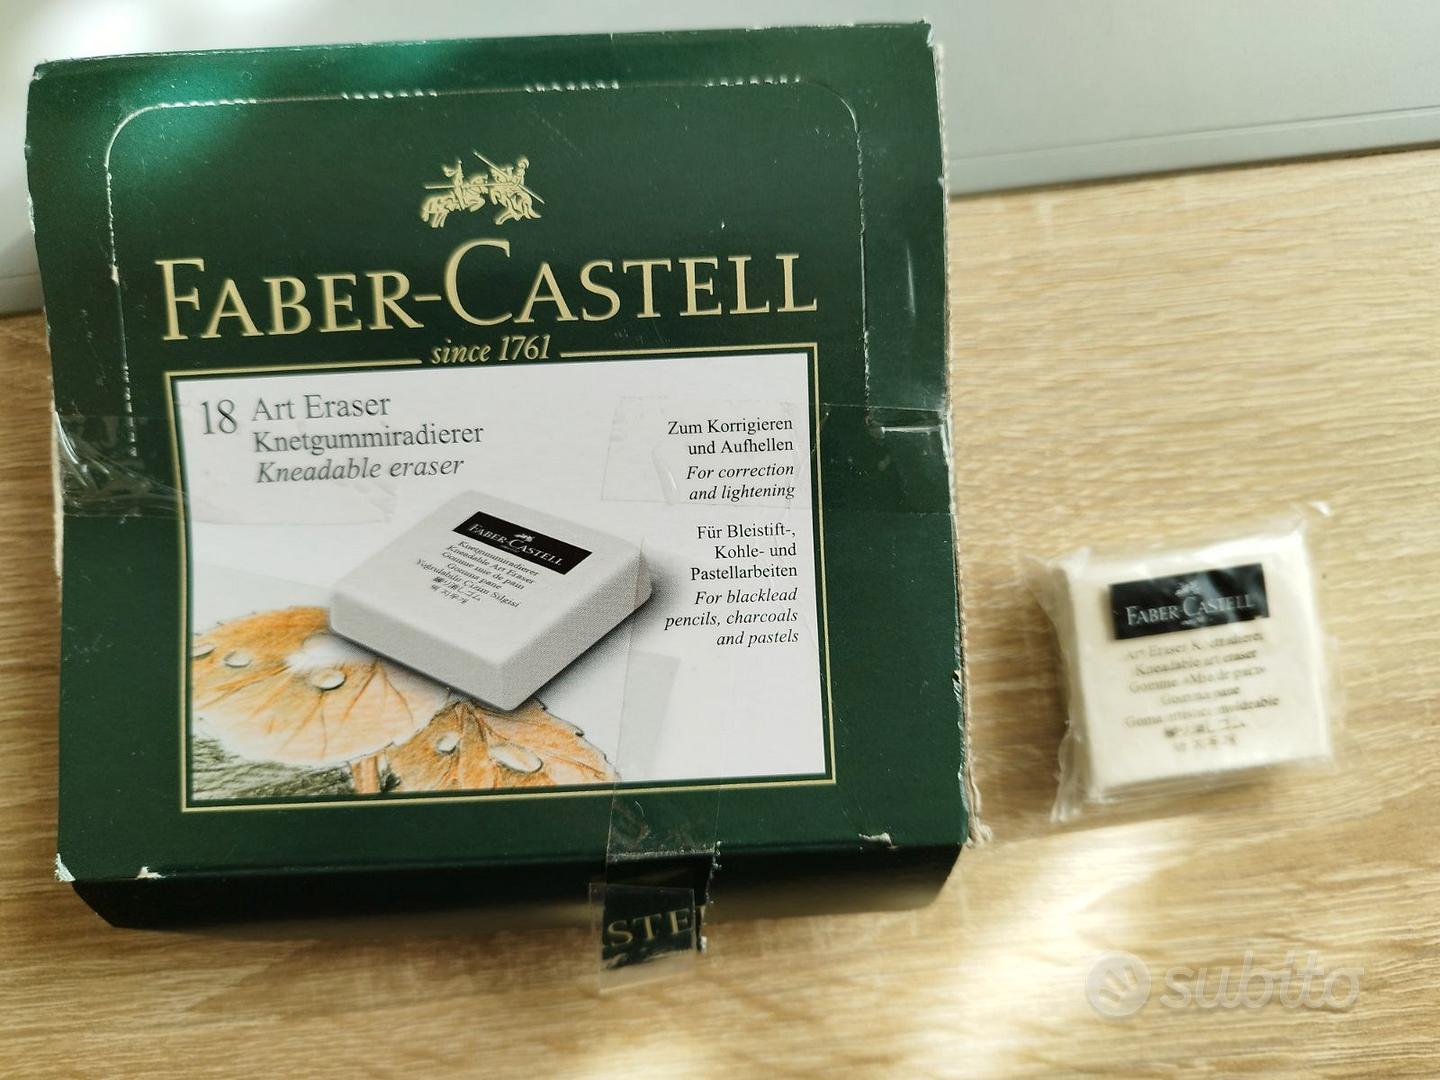 Gomma Pane Faber-Castell 127154 box 17 PZ - Collezionismo In vendita a  Catania